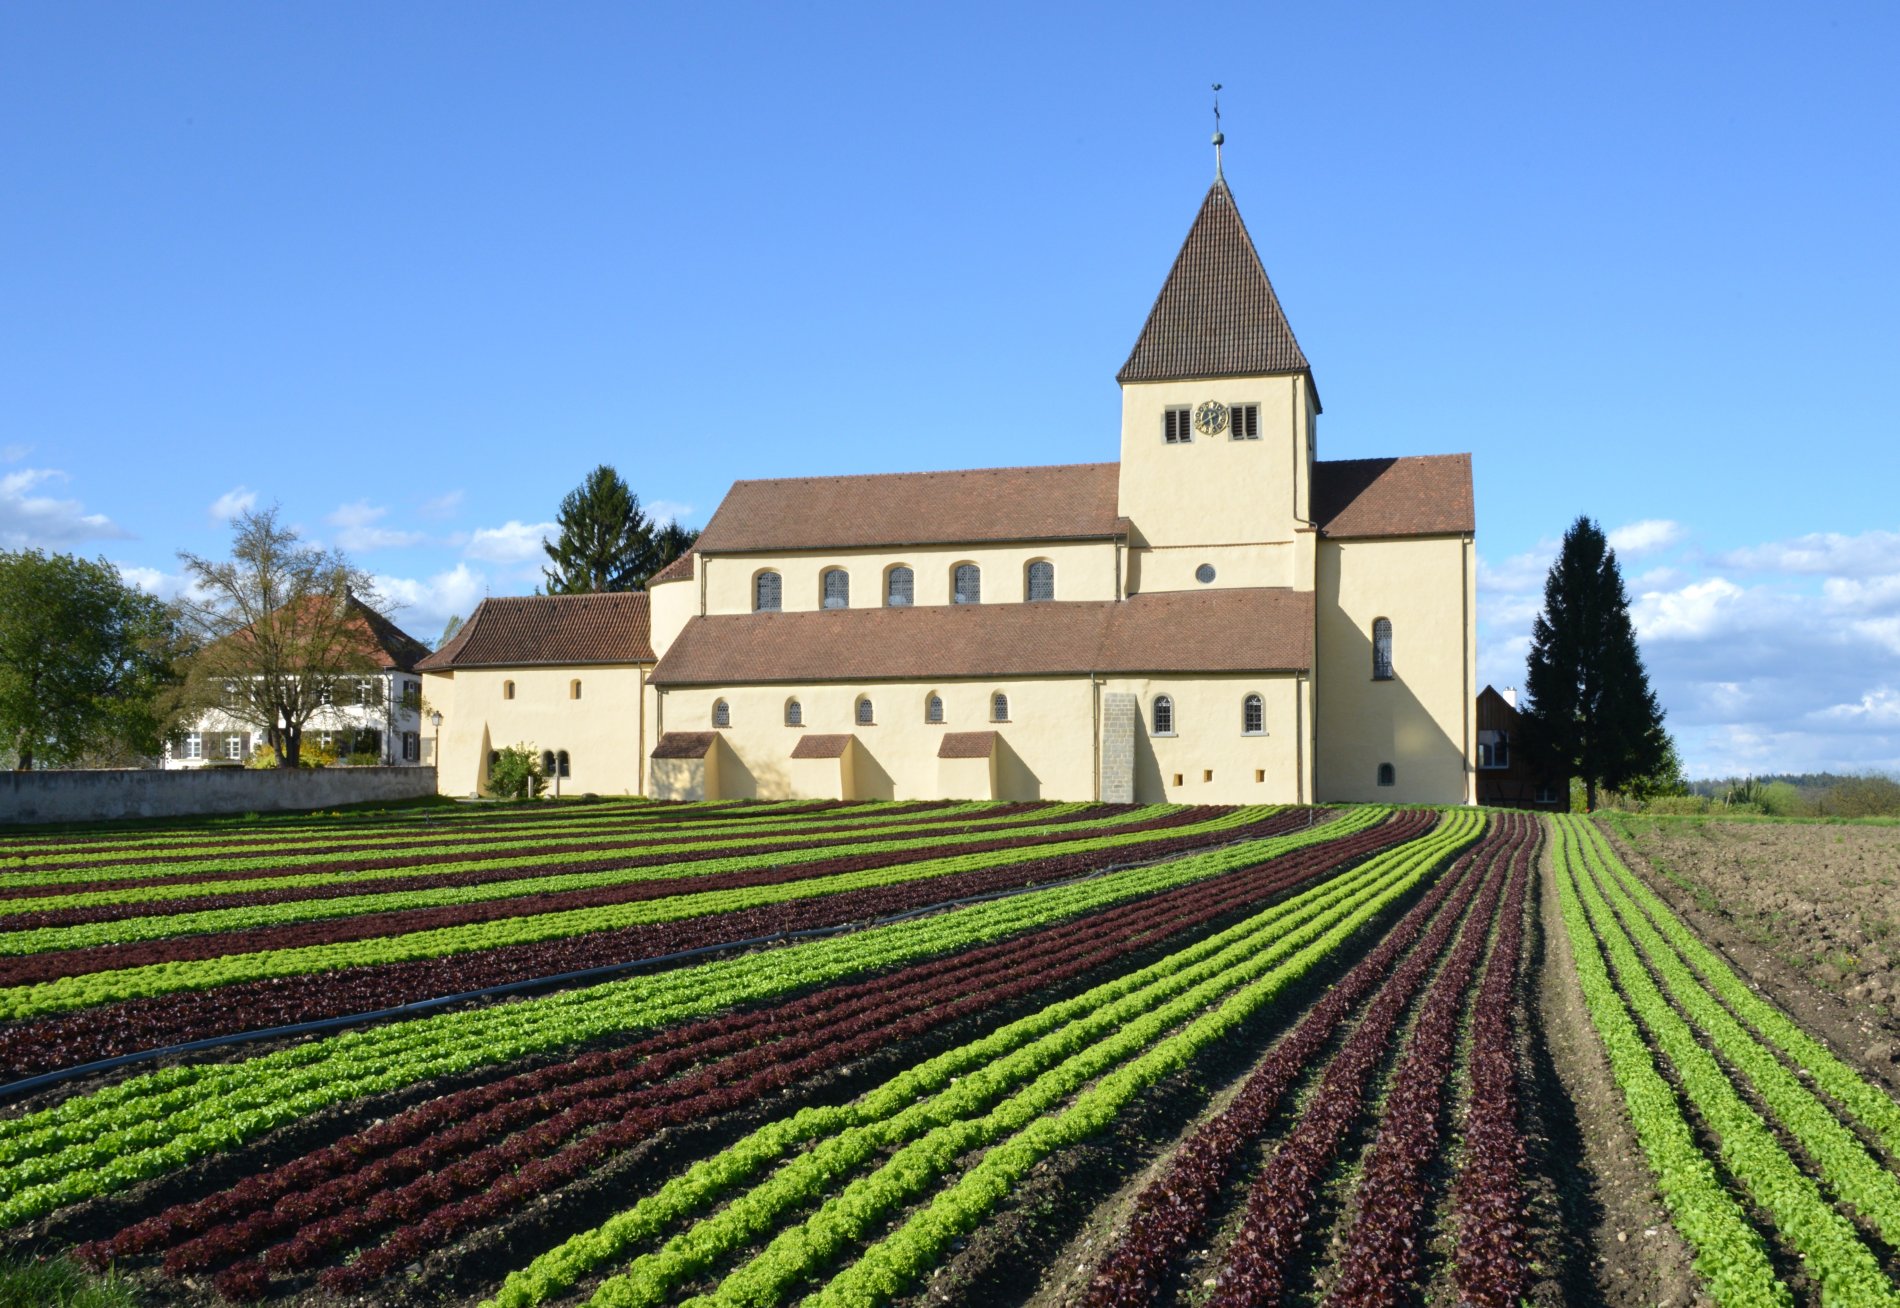 Kirche St. Georg mit Salatfeld